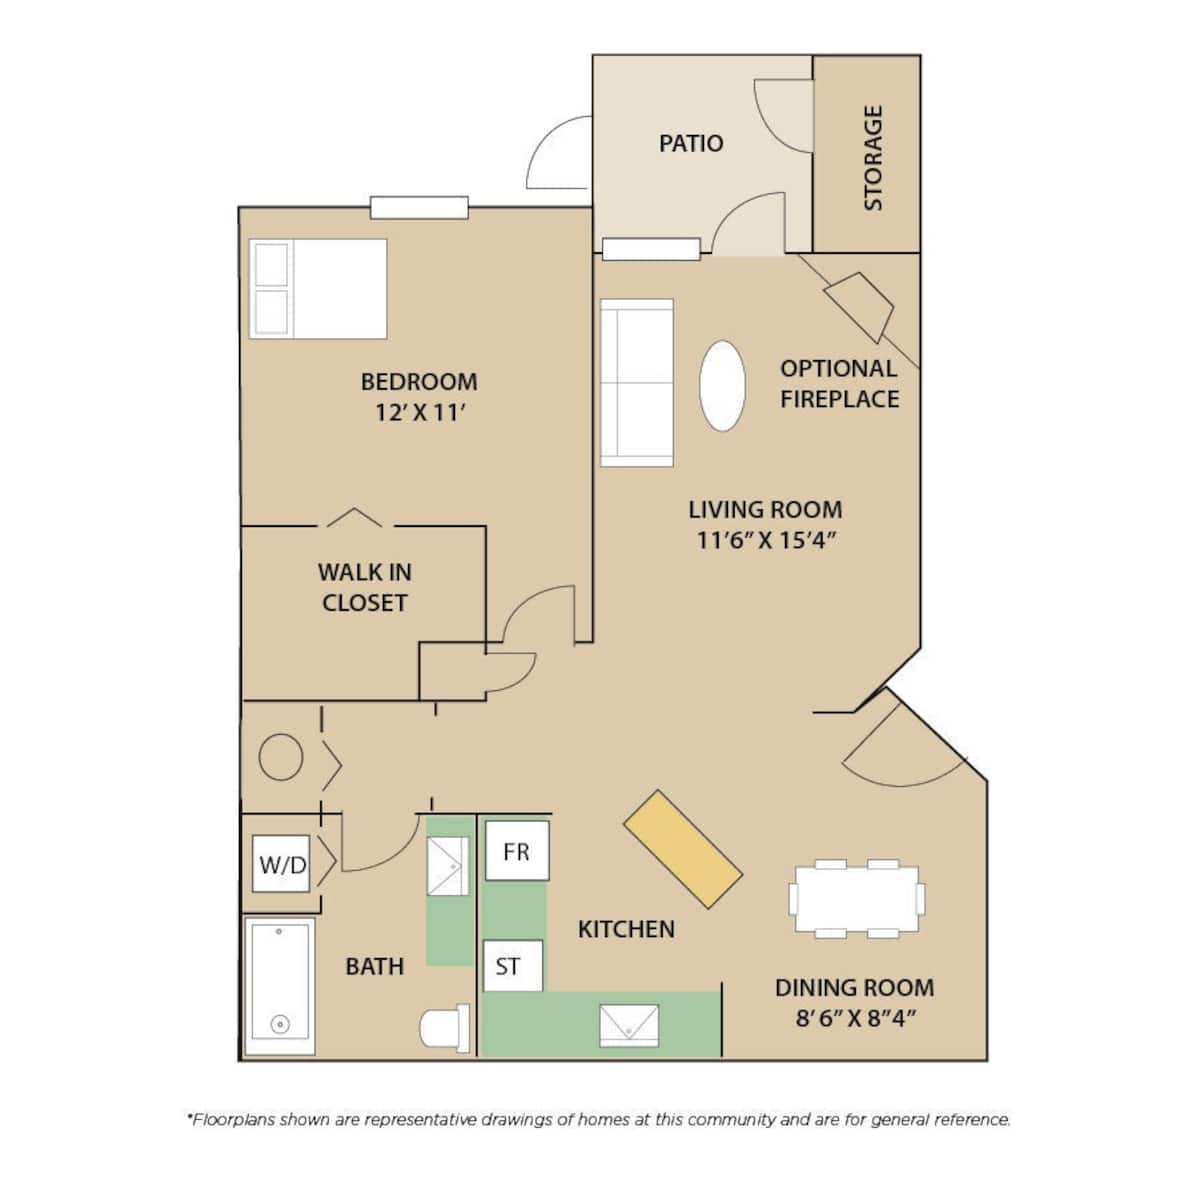 Floorplan diagram for Cape Elizabeth FP & LV, showing 1 bedroom